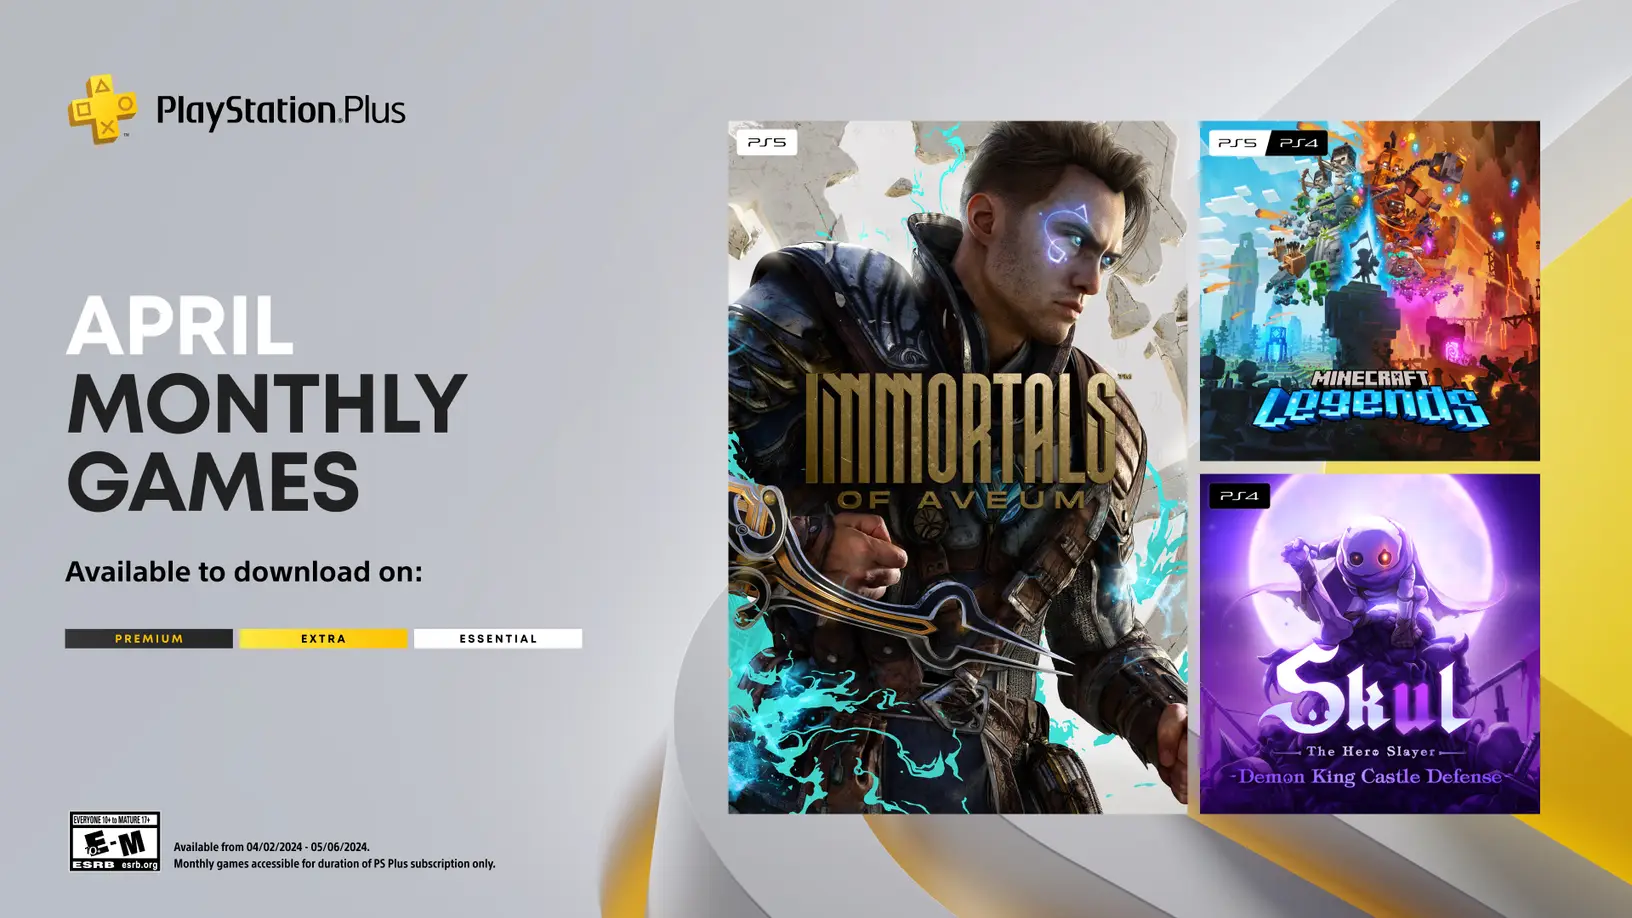 Immortals of Aveum sẽ miễn phí cho game thủ PS5 trong tháng 4 này